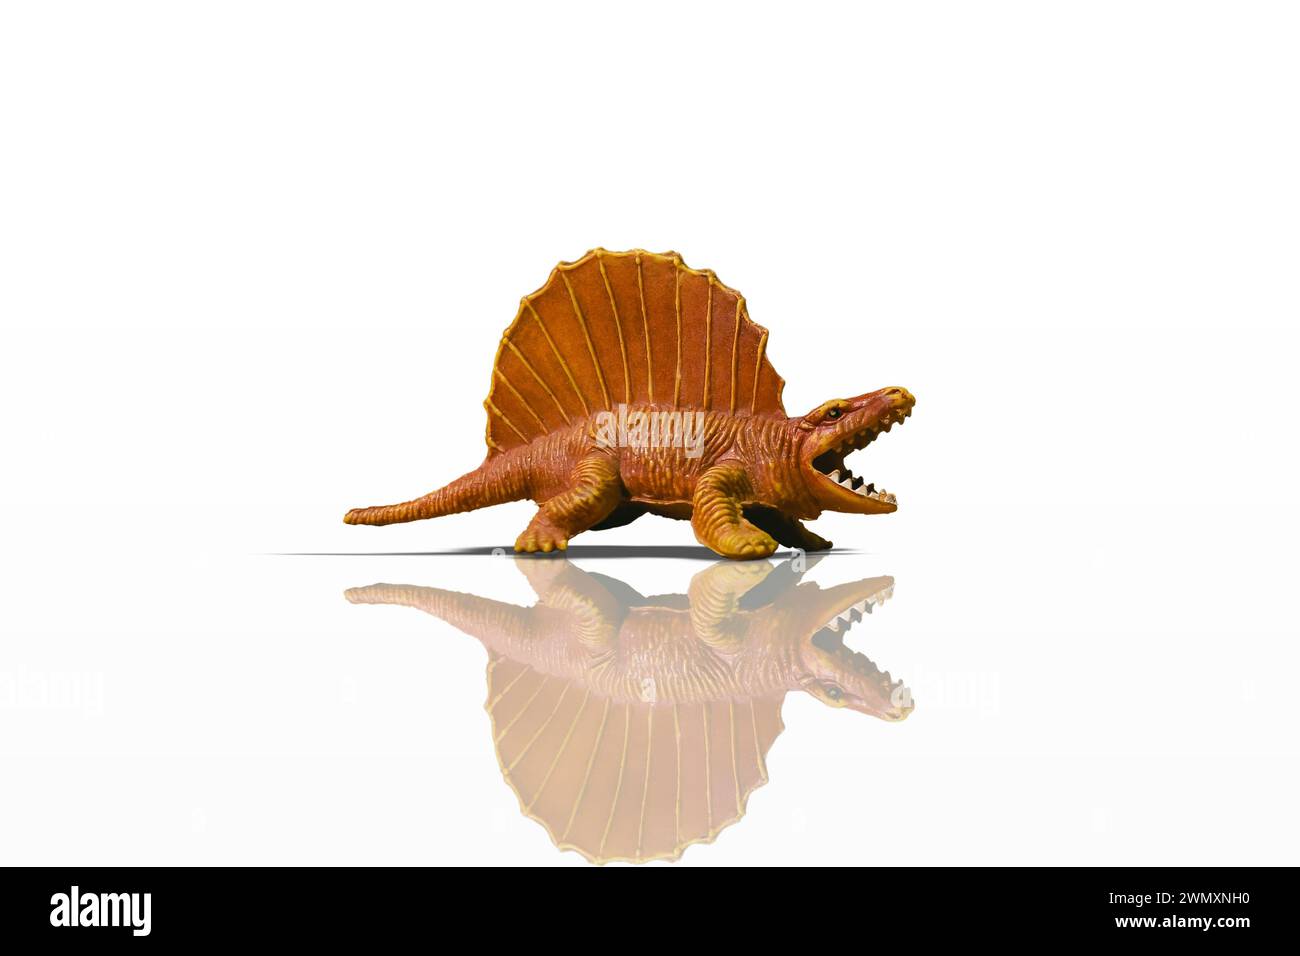 Statuetta di dinosauro Dimetrodon arancione aggressiva isolata su sfondo bianco con riflessi e ombre aggiuntivi Foto Stock